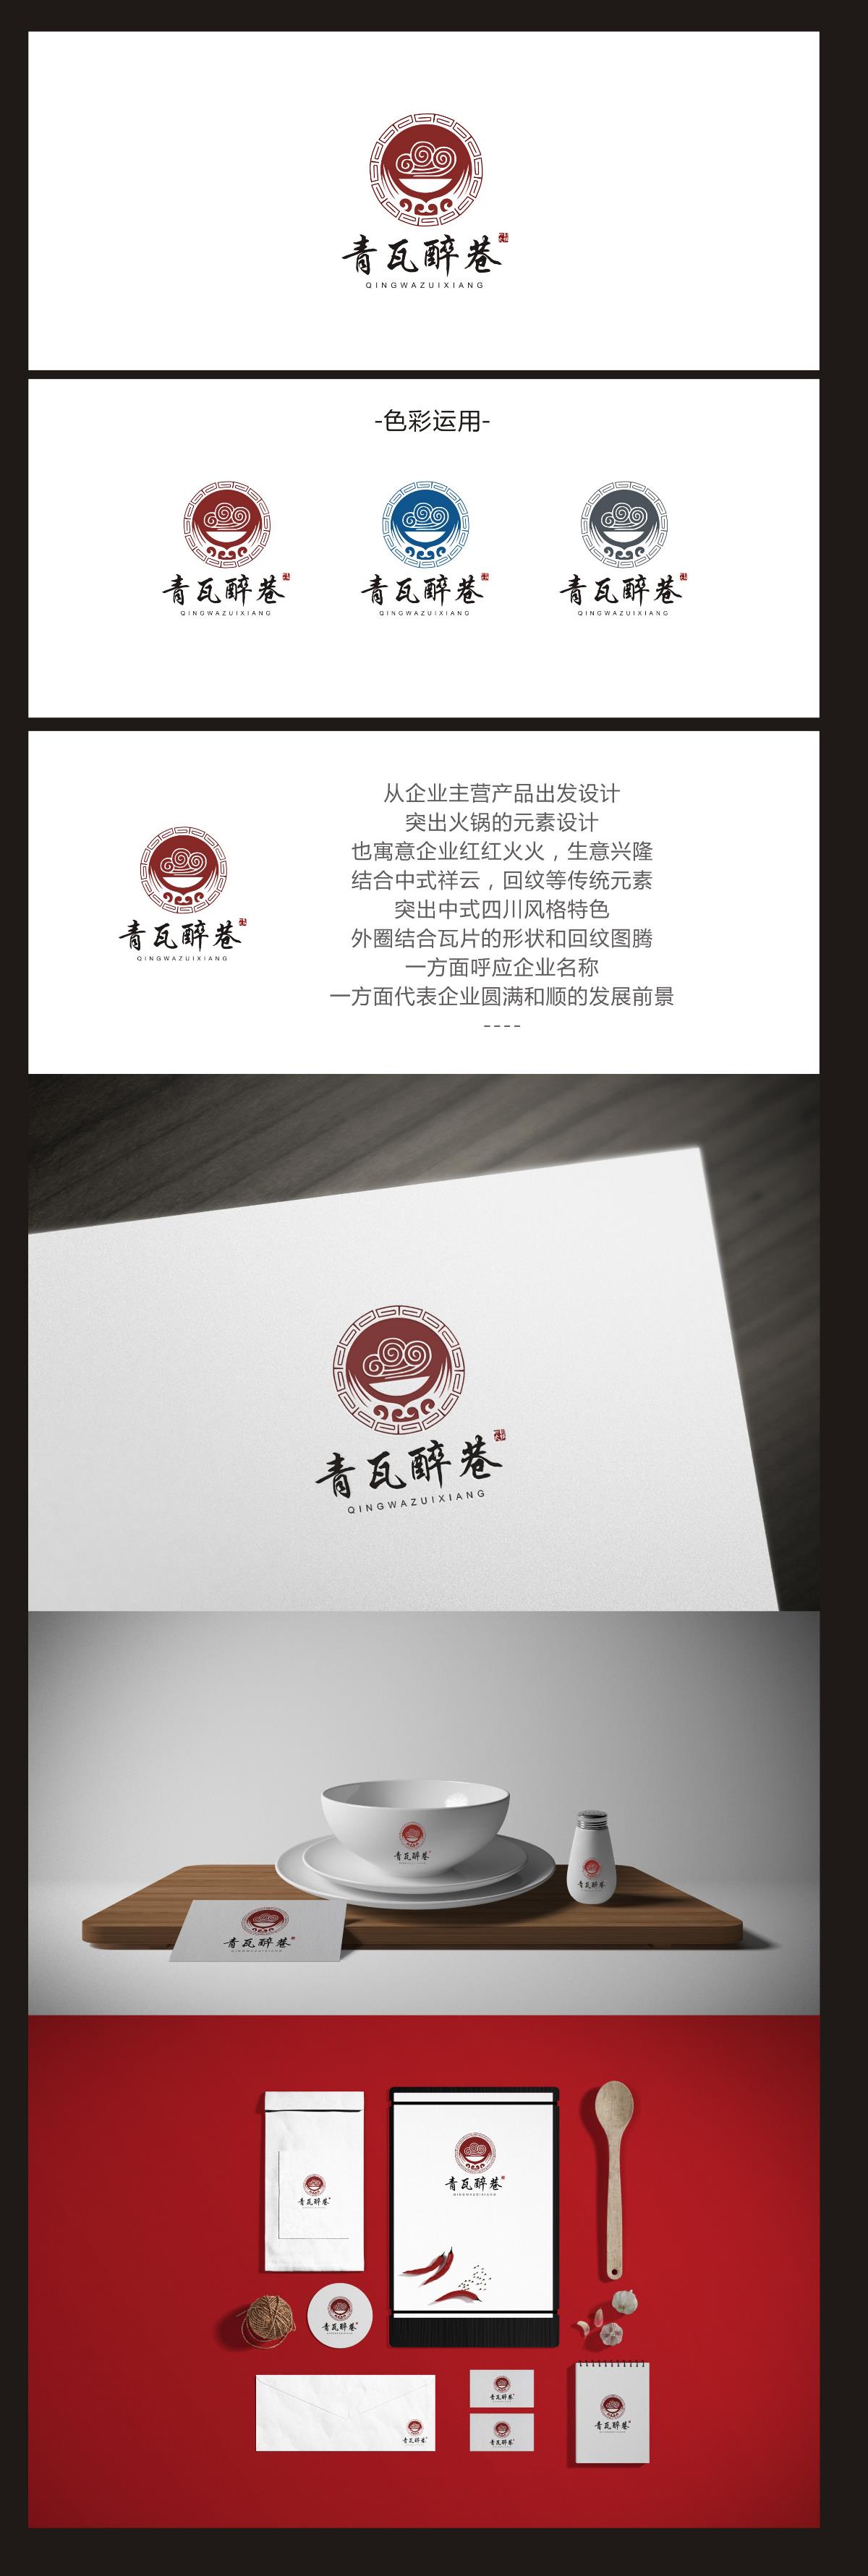 青瓦醉巷-成都餐饮log设计-万城文化品牌设计-中国设计网